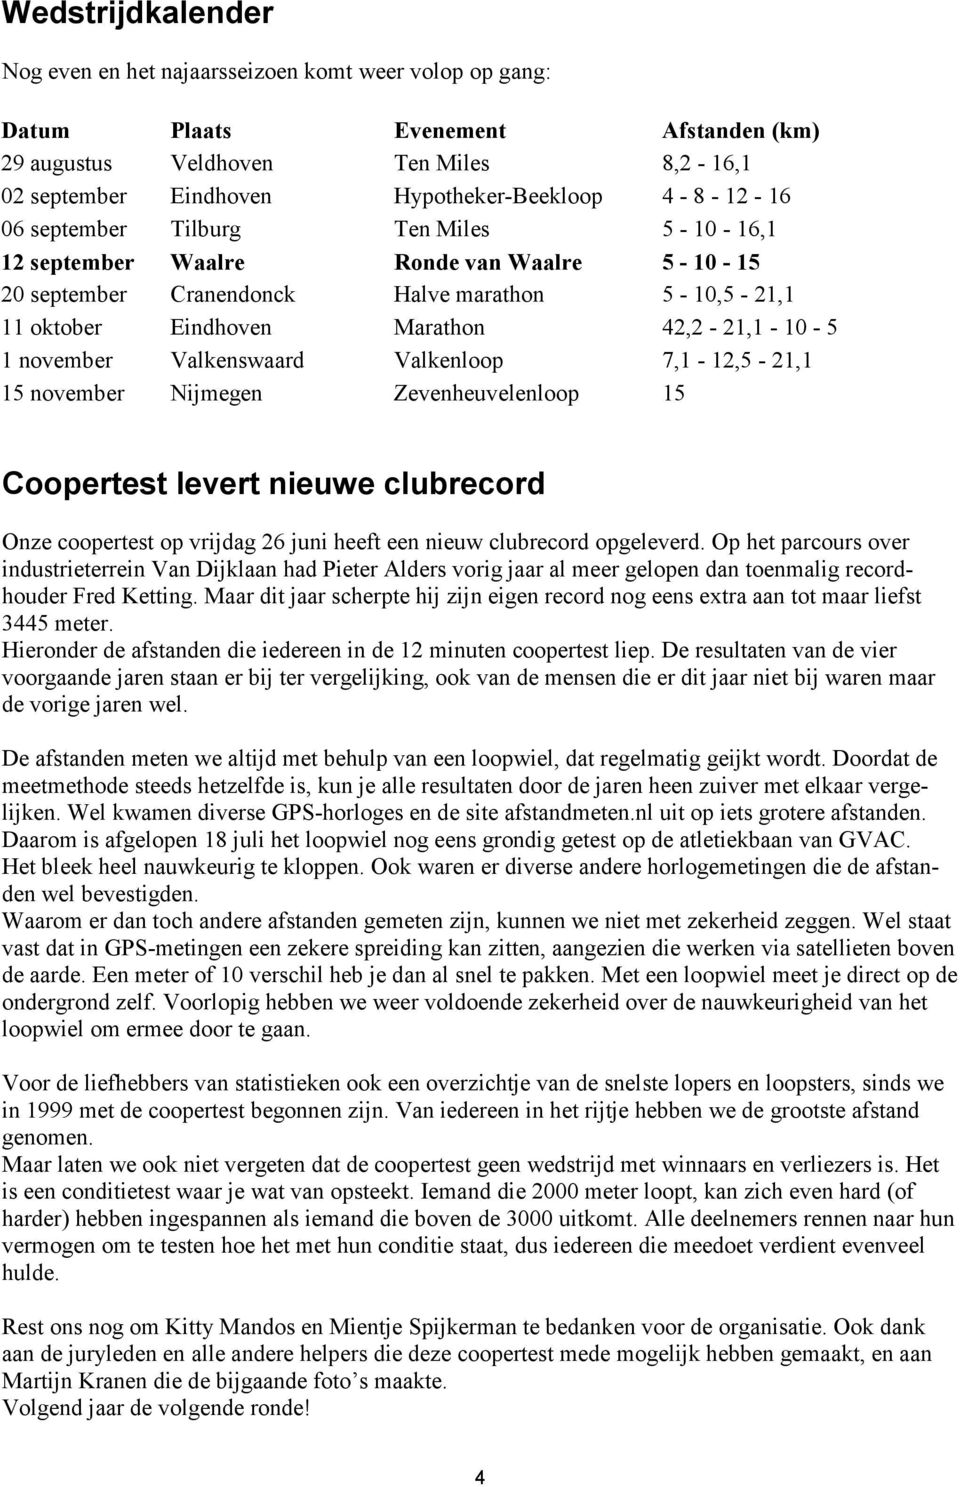 november Valkenswaard Valkenloop 7,1-12,5-21,1 15 november Nijmegen Zevenheuvelenloop 15 Coopertest levert nieuwe clubrecord Onze coopertest op vrijdag 26 juni heeft een nieuw clubrecord opgeleverd.